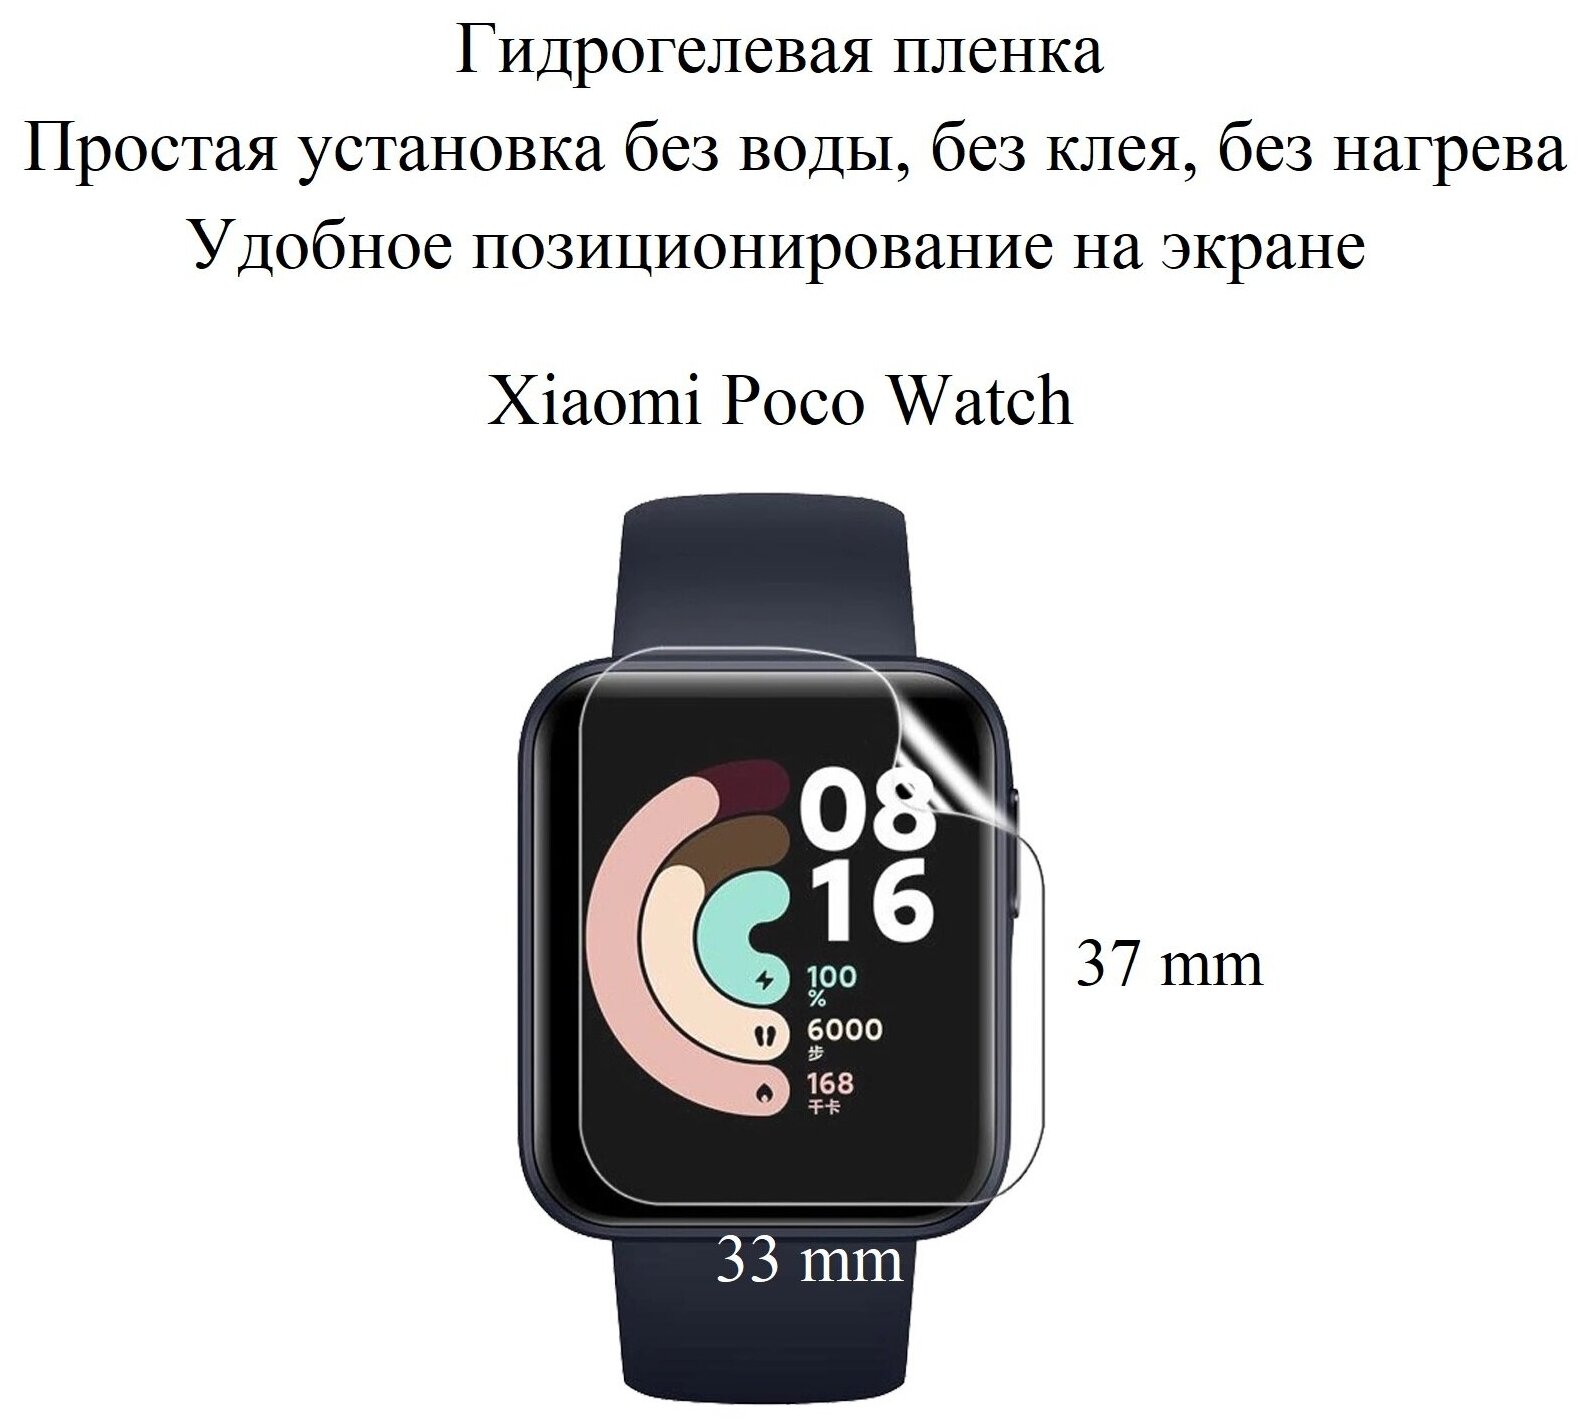 Глянцевая гидрогелевая пленка hoco. на экран смарт-часов Xiaomi POCO Watch (2 шт.)